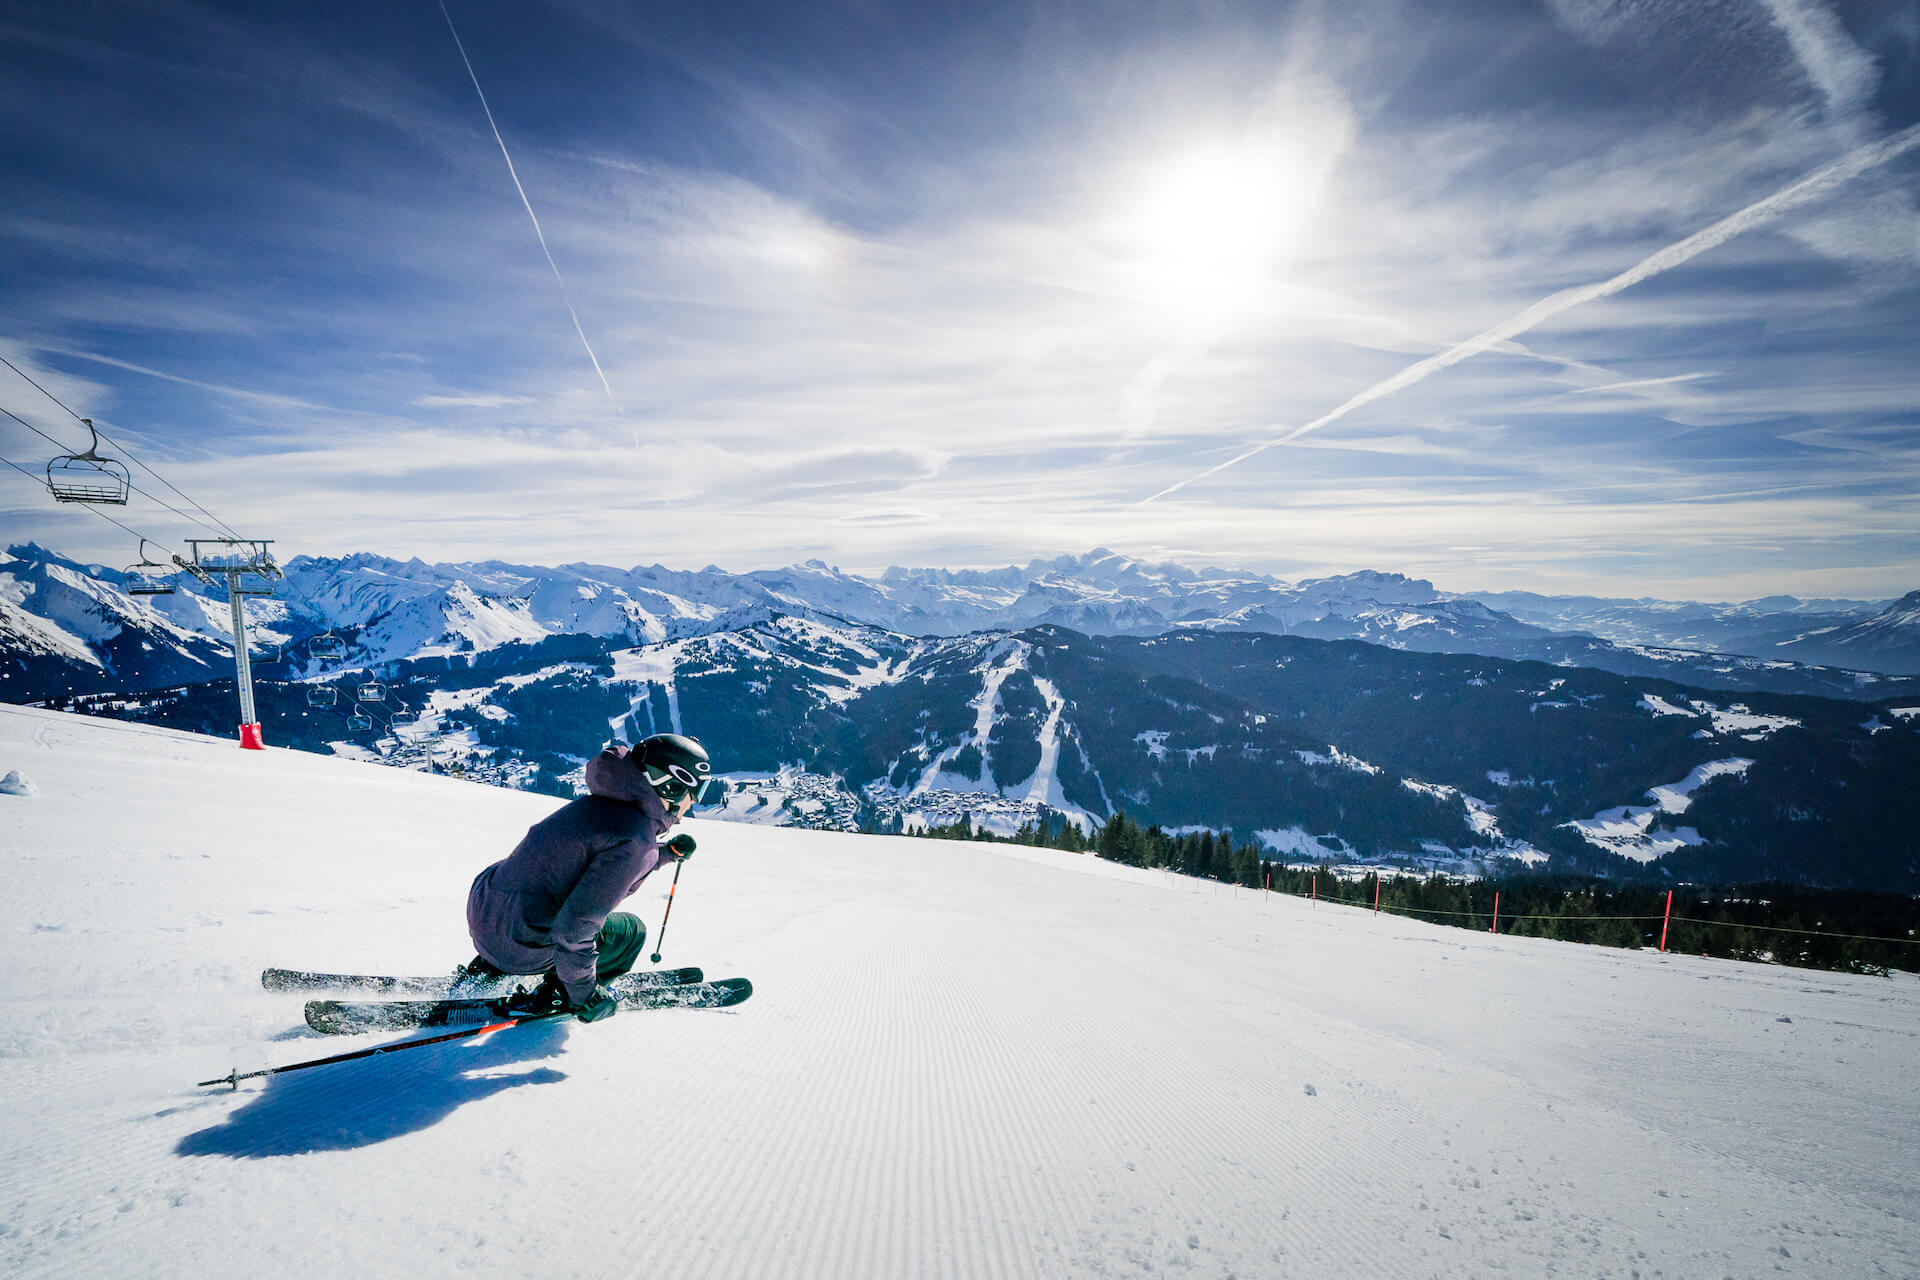 Skieur descendant une piste avec montagne et télésiège en fond